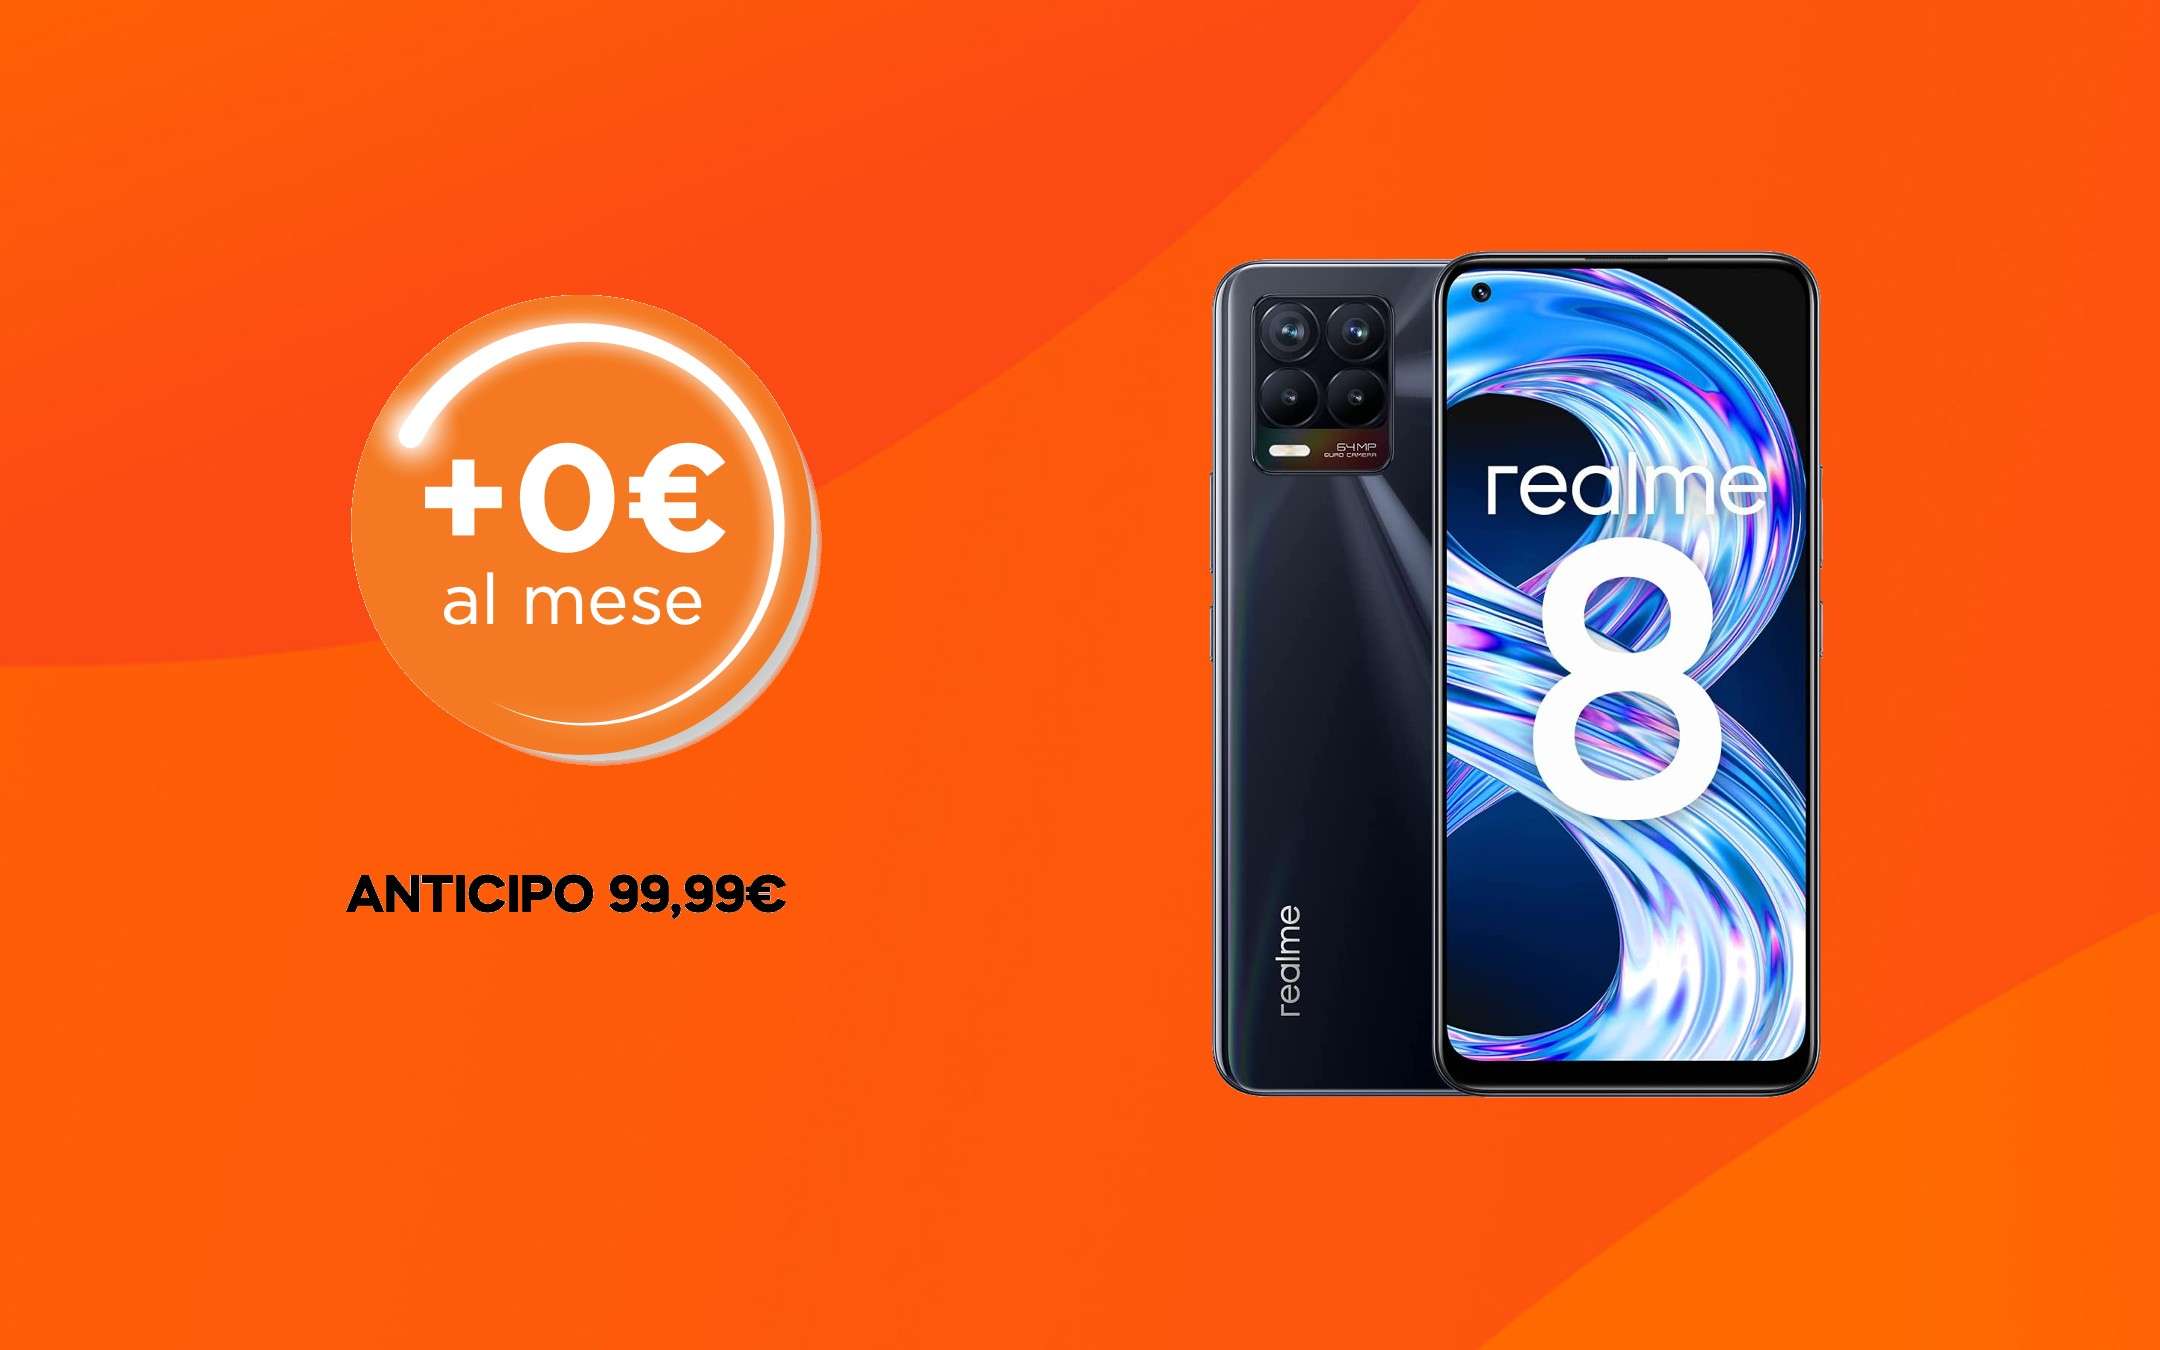 Smartphone a 0€: ora disponibile Realme 8 a 99,99€